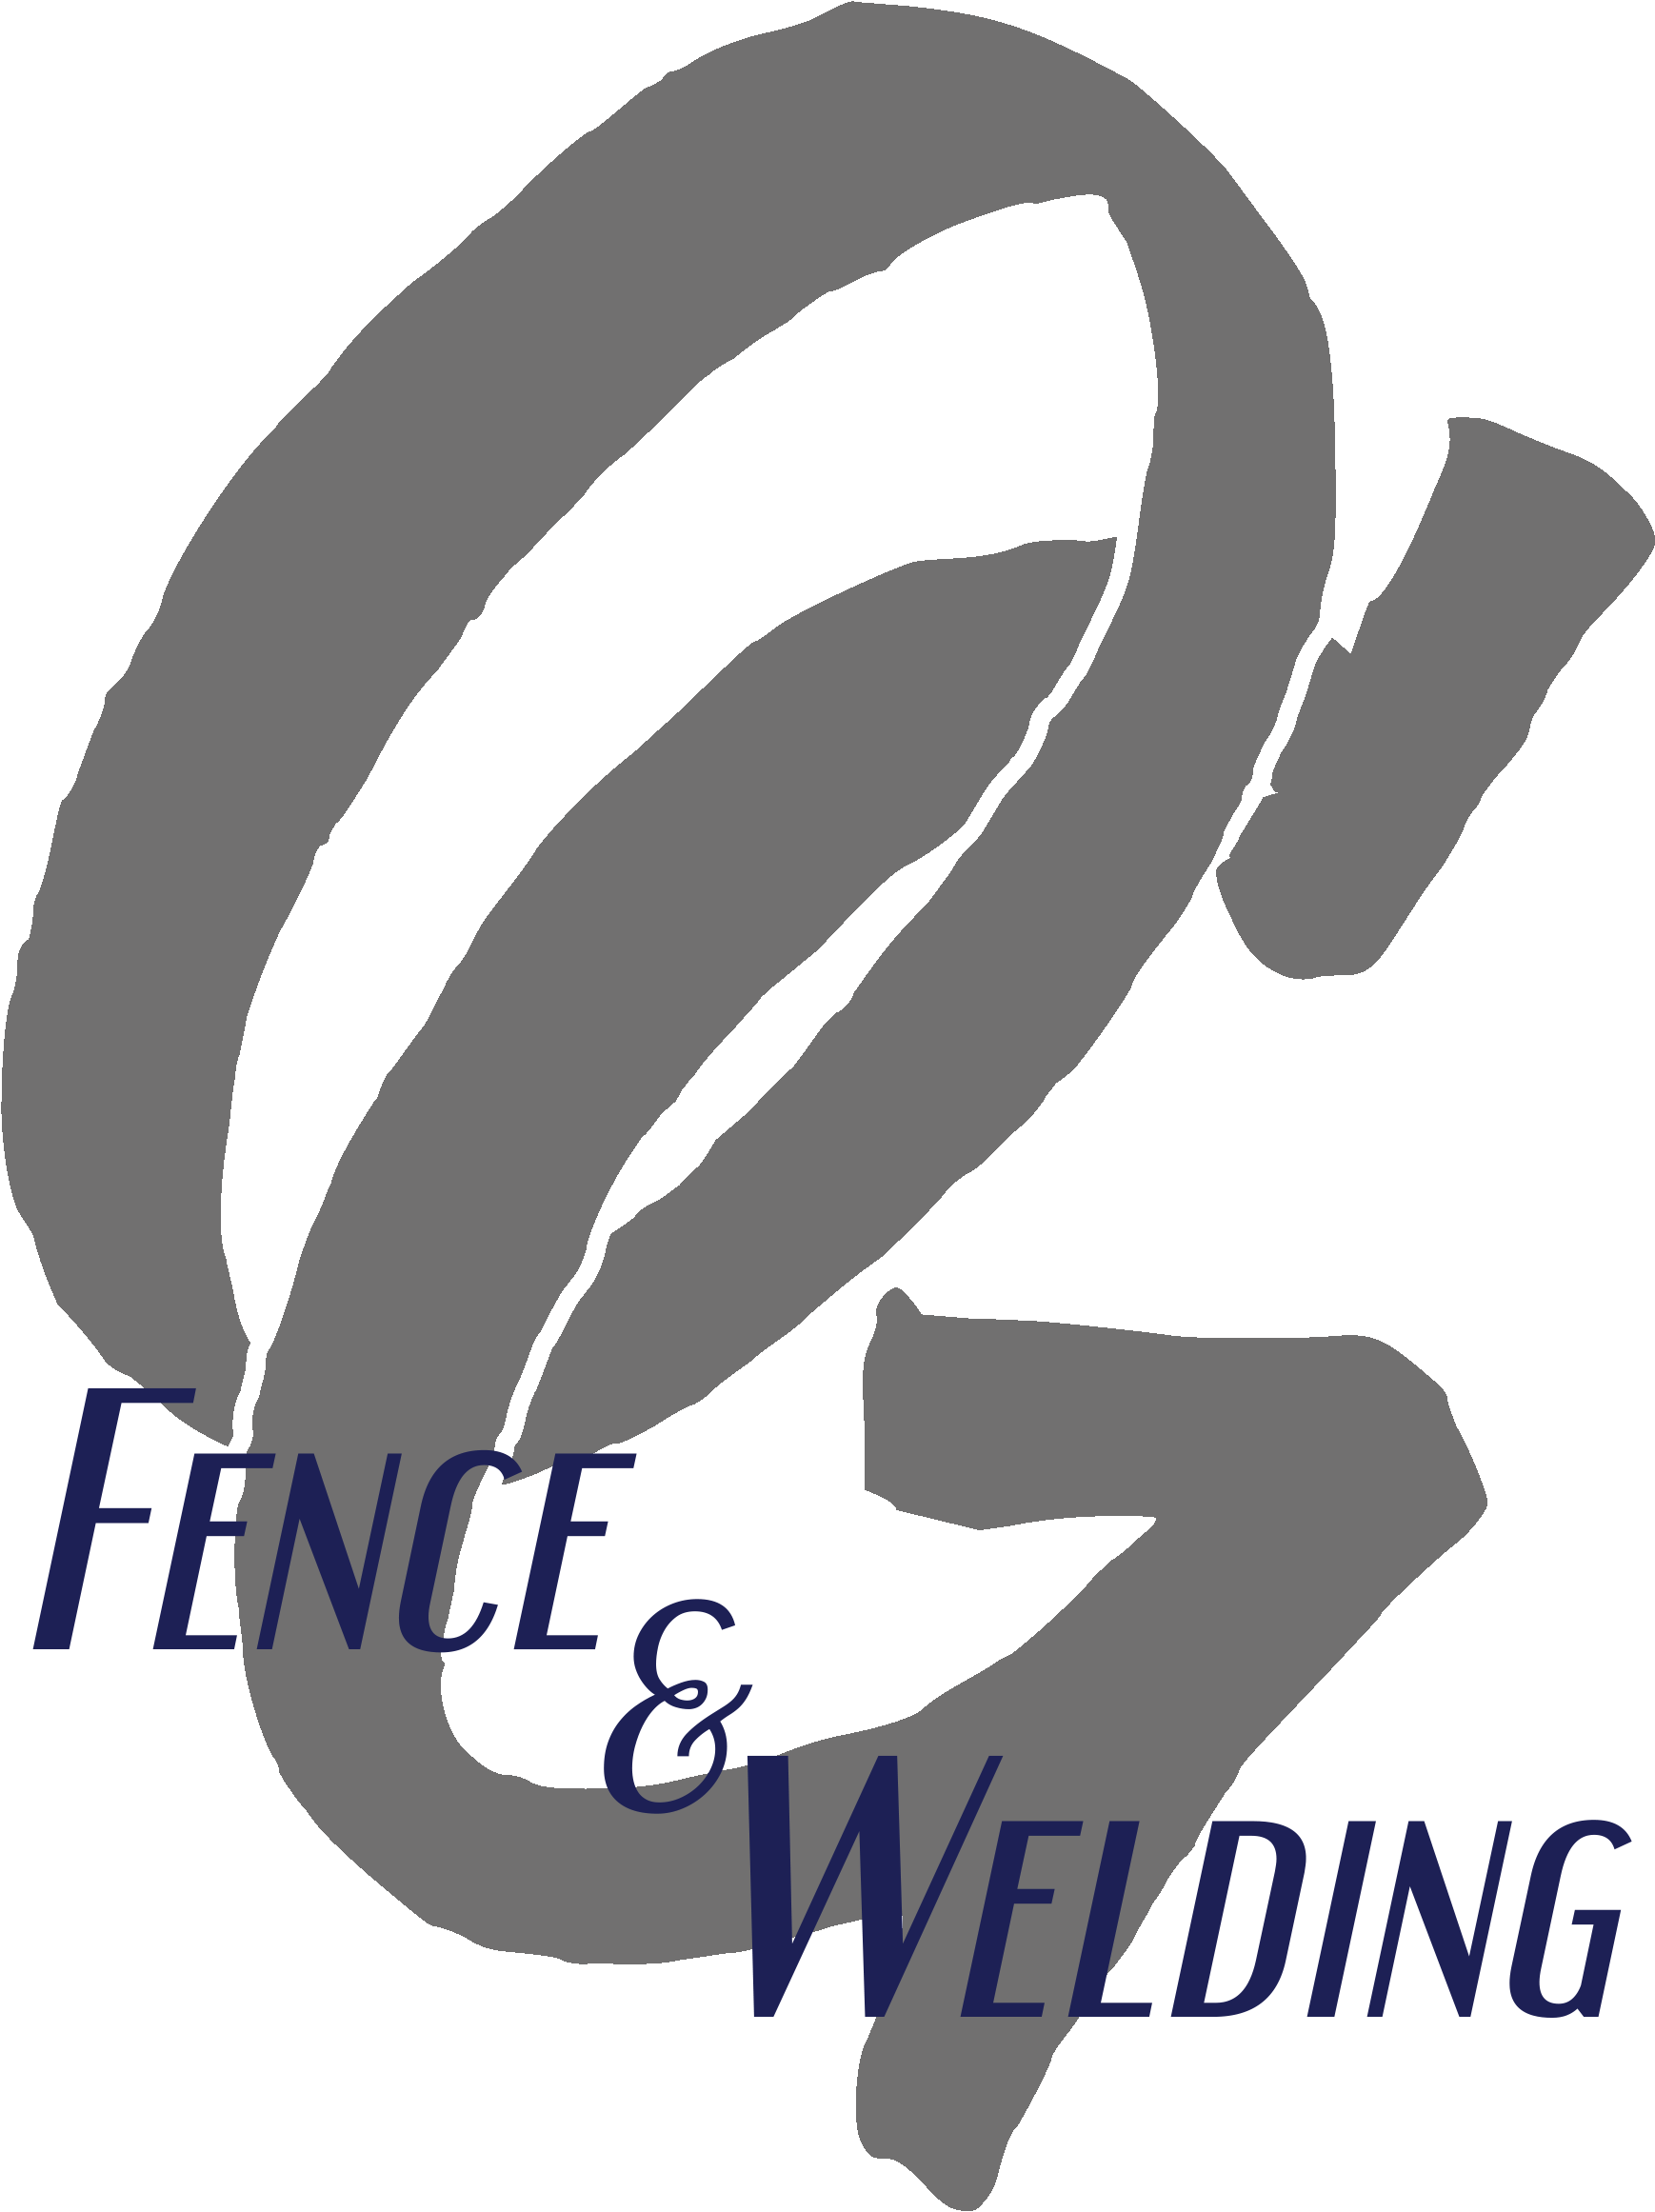 OG Fence & Welding Logo